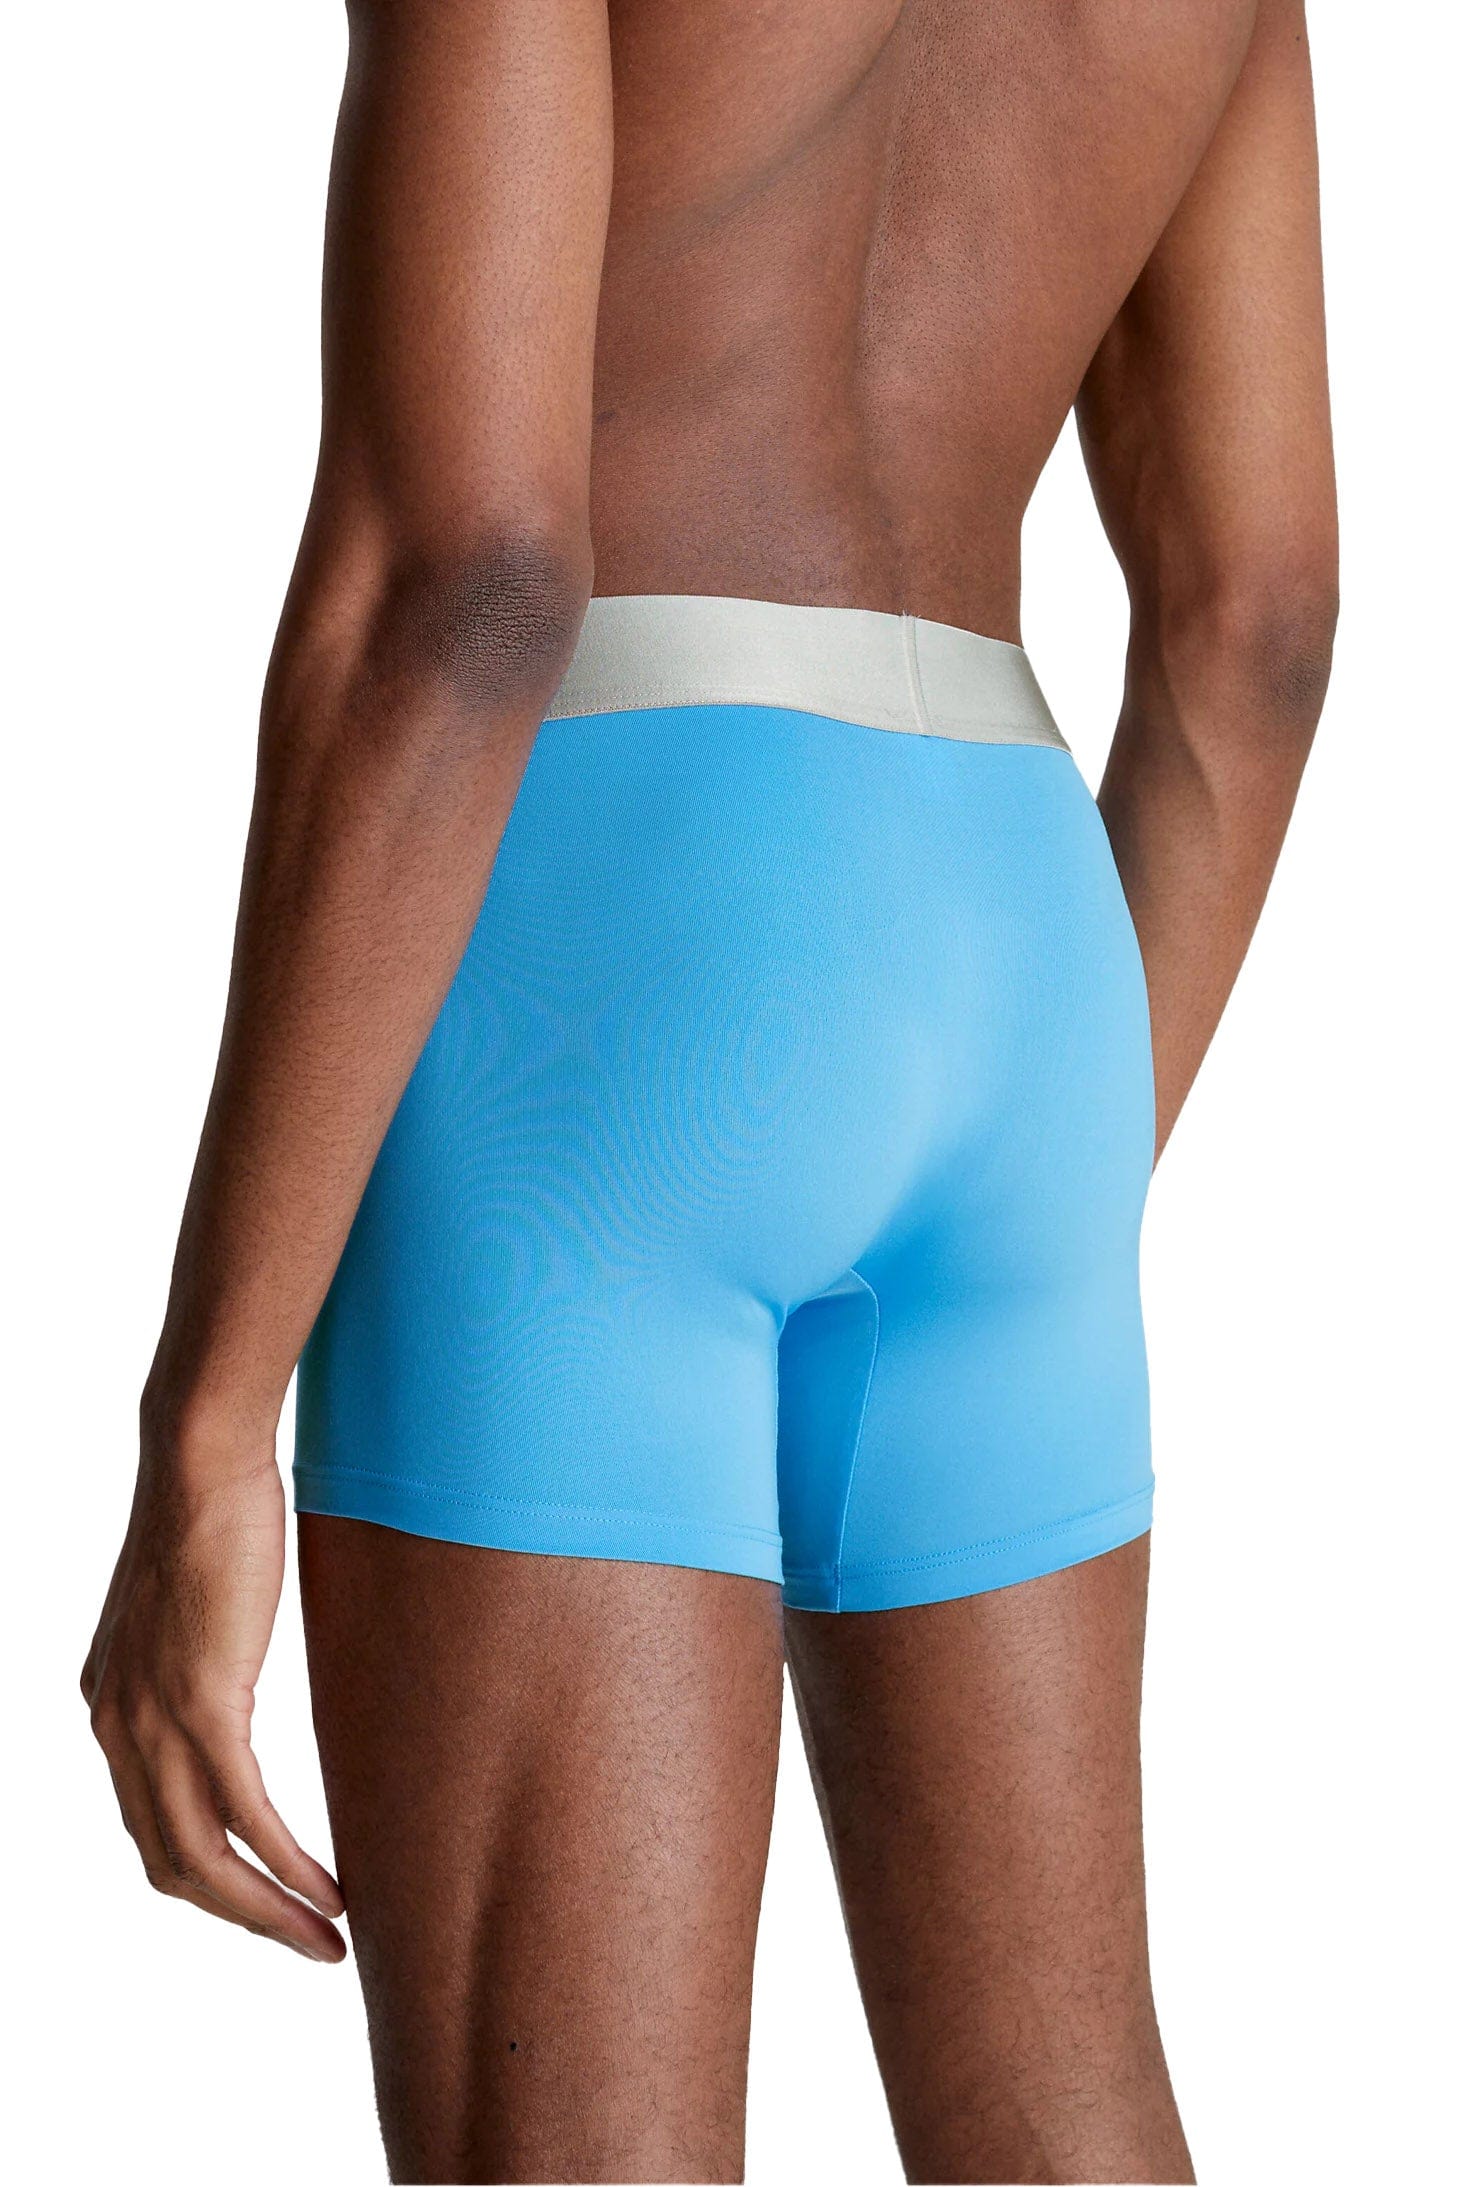 Calvin Klein Underwear HIP BRIEF 3 PACK - Briefs - mid blue/signature  blue/clay grey/grey - Zalando.de